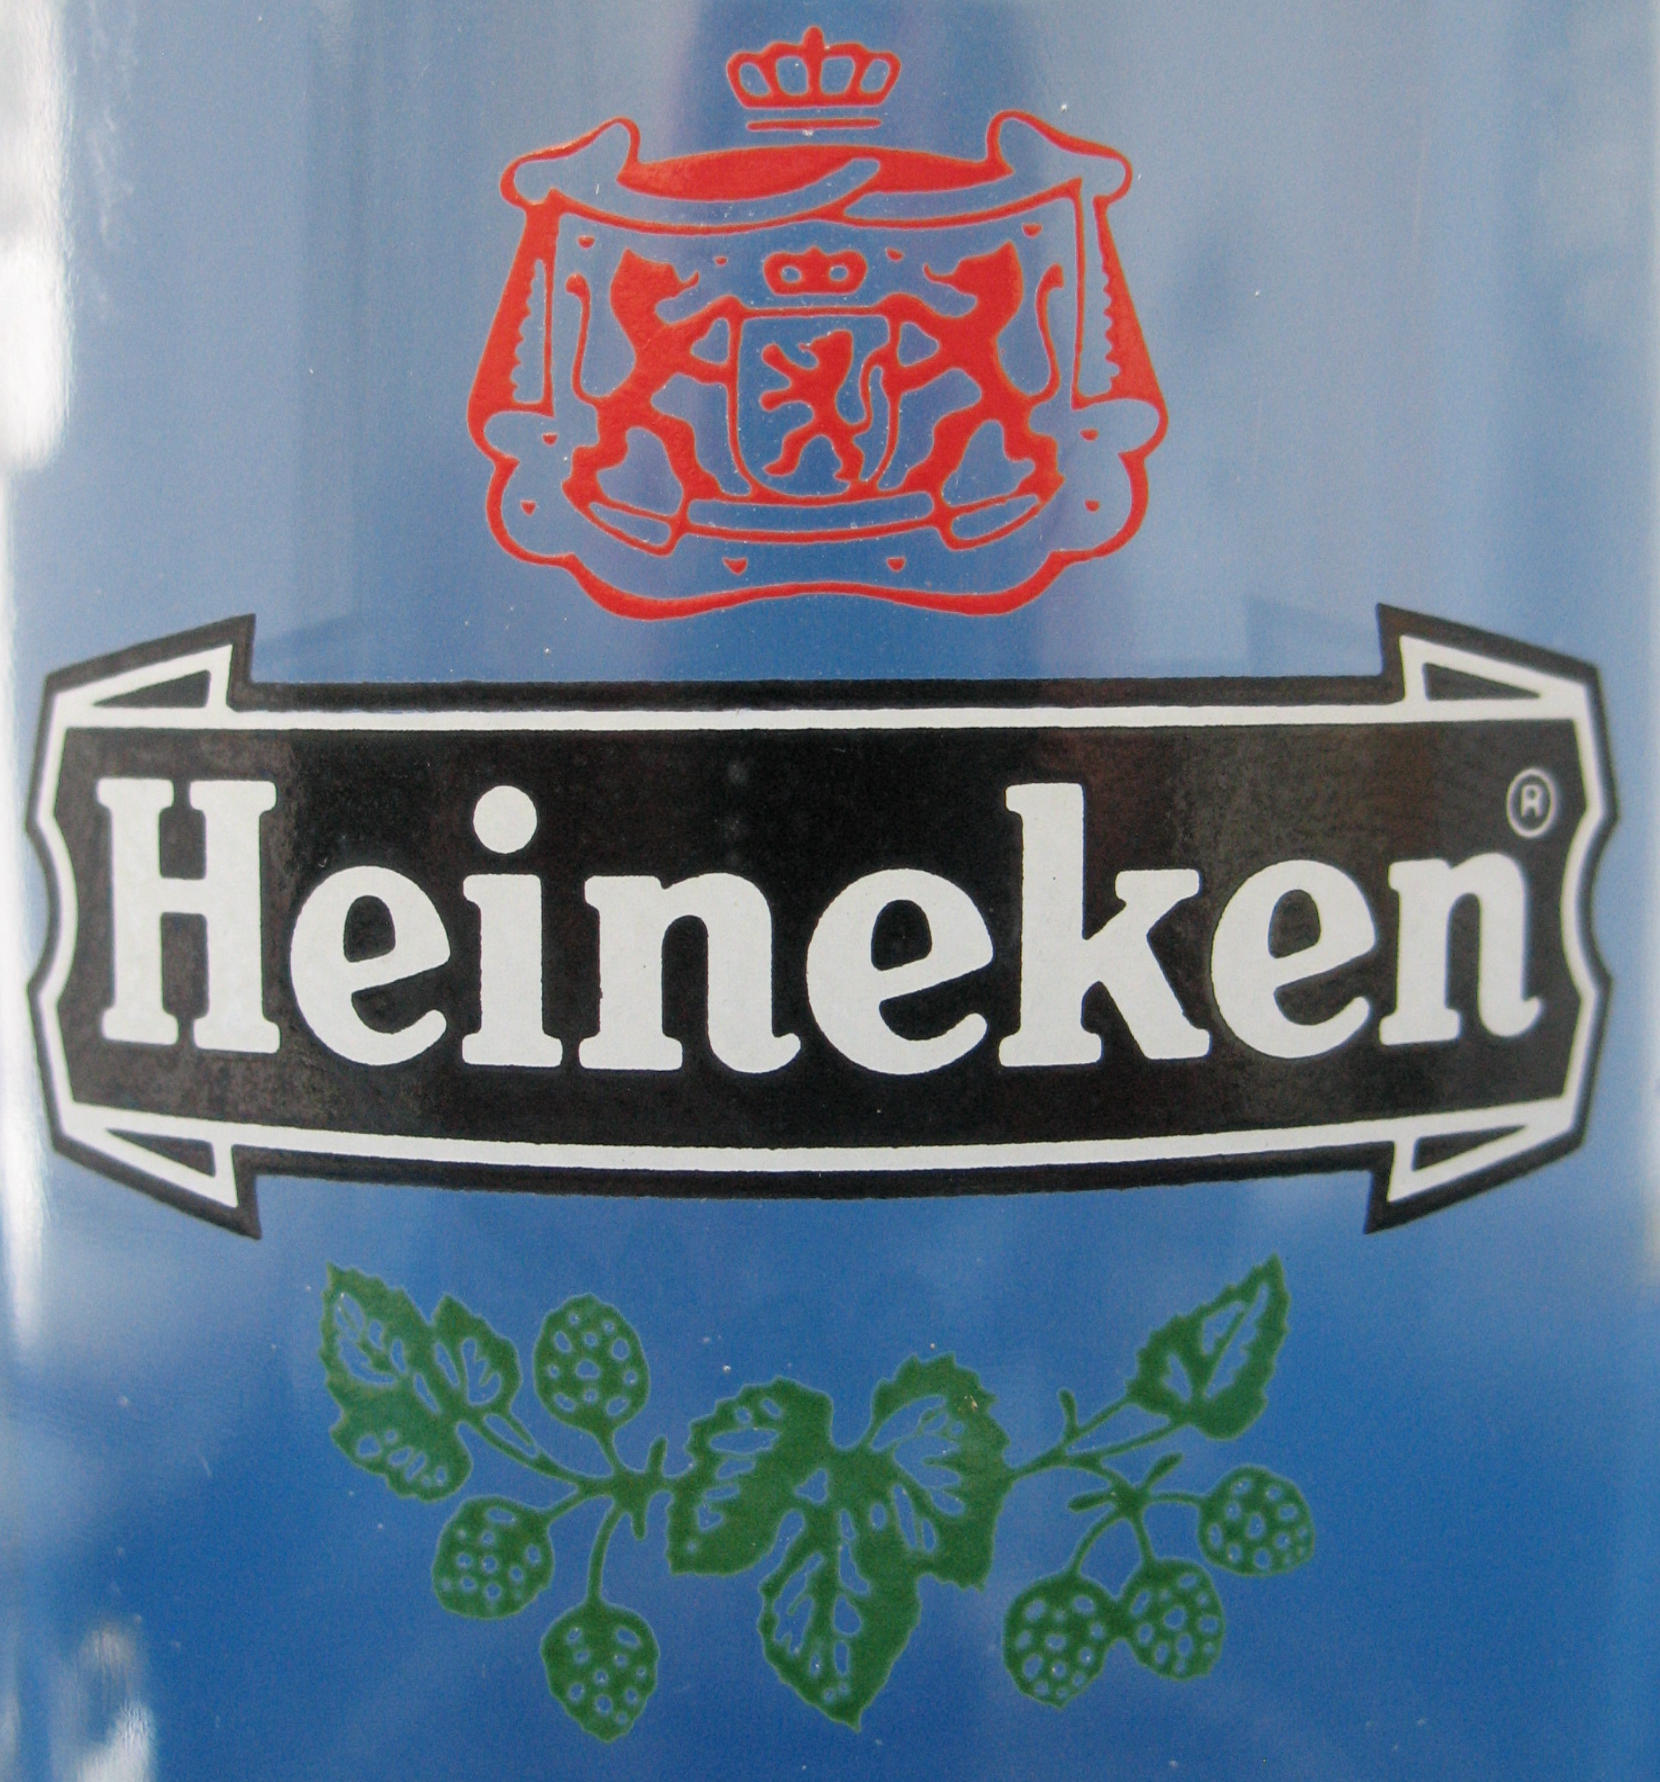 Old Heineken Logo